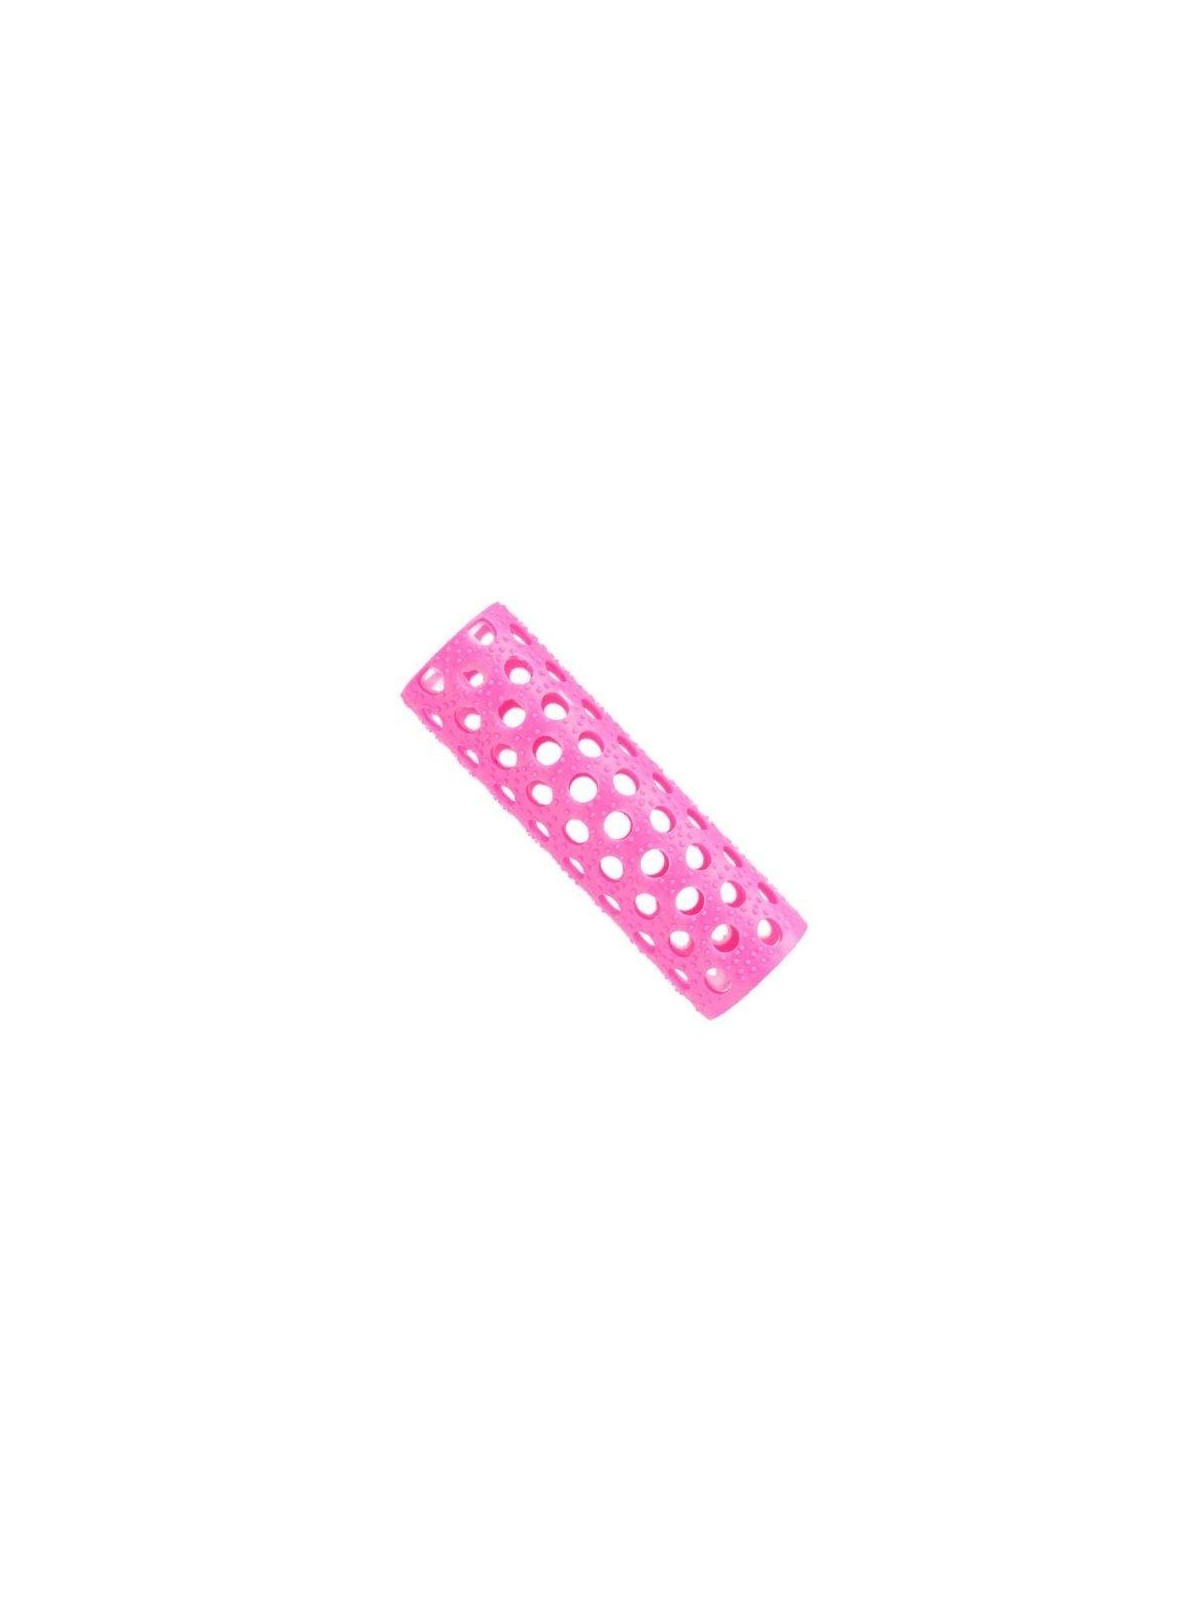 Bucles rosa translucido 17mm Eurostil